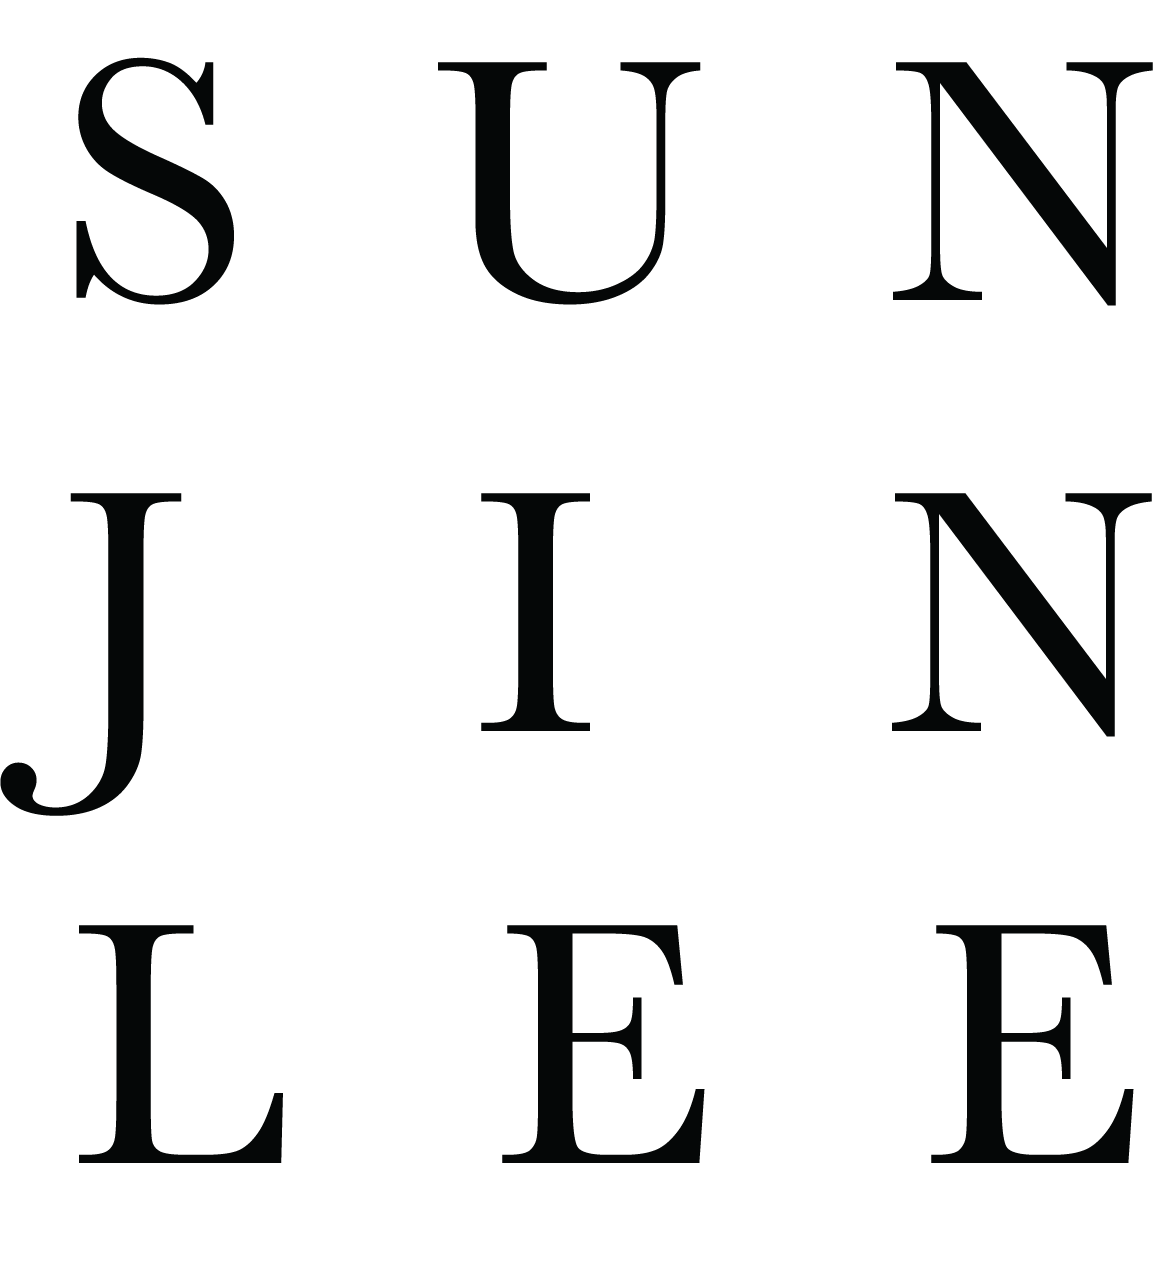 Sunjin Lee